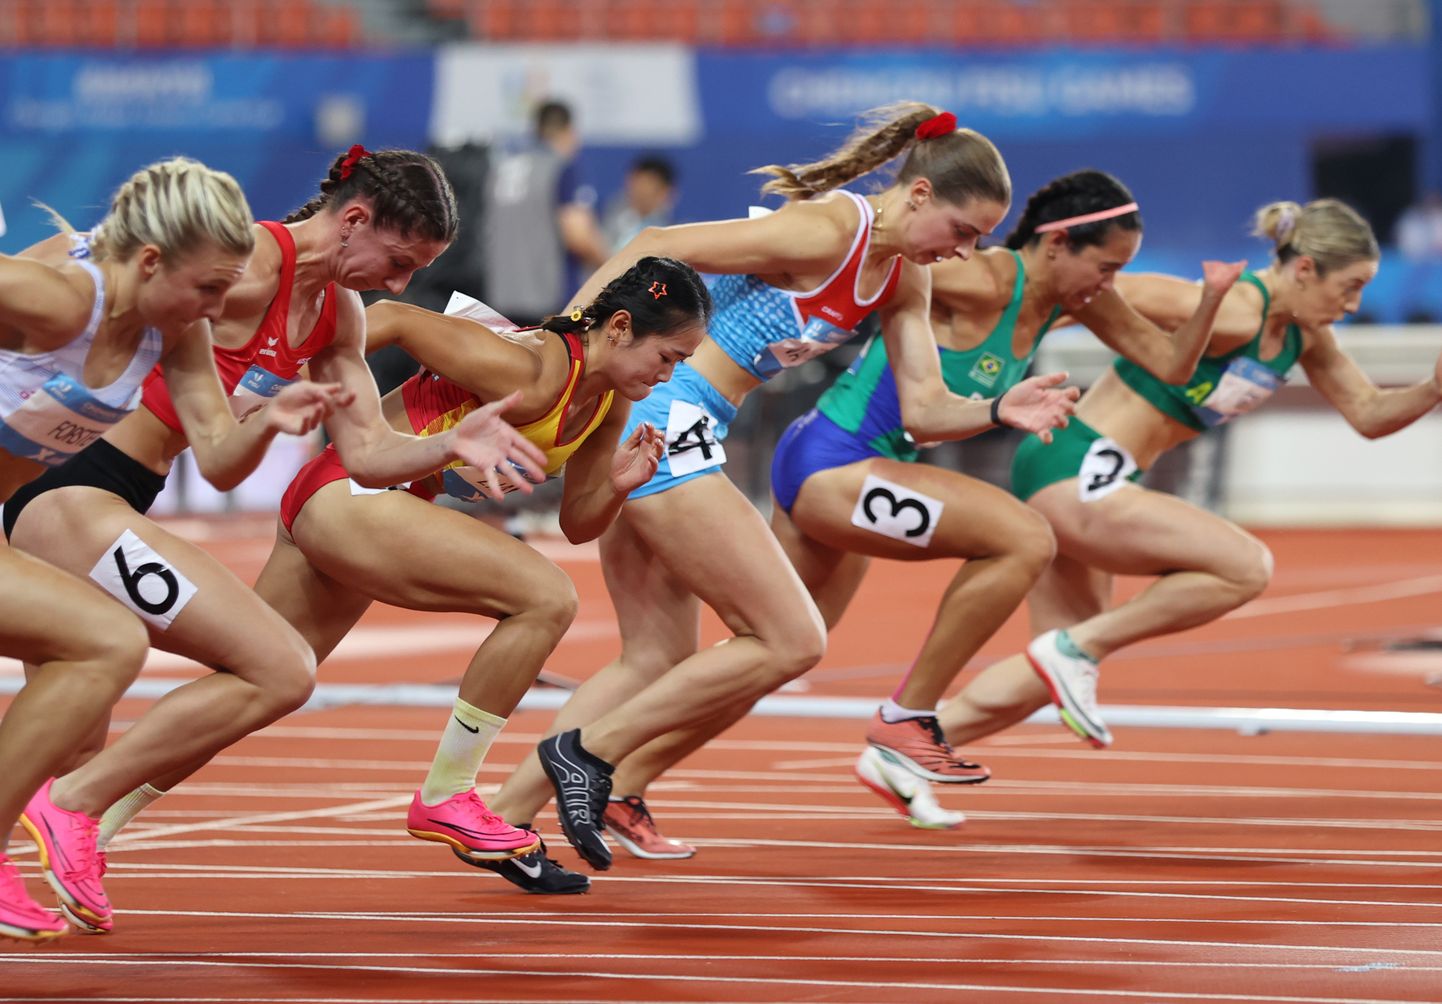 Naiste 100 meetri finaal suveuniversiaadil Chengdus oli tasavägine. Eeljooksus sai näha aga jooksjat, kes läbis distantsi võitjaks kaks korda aeglasemalt.